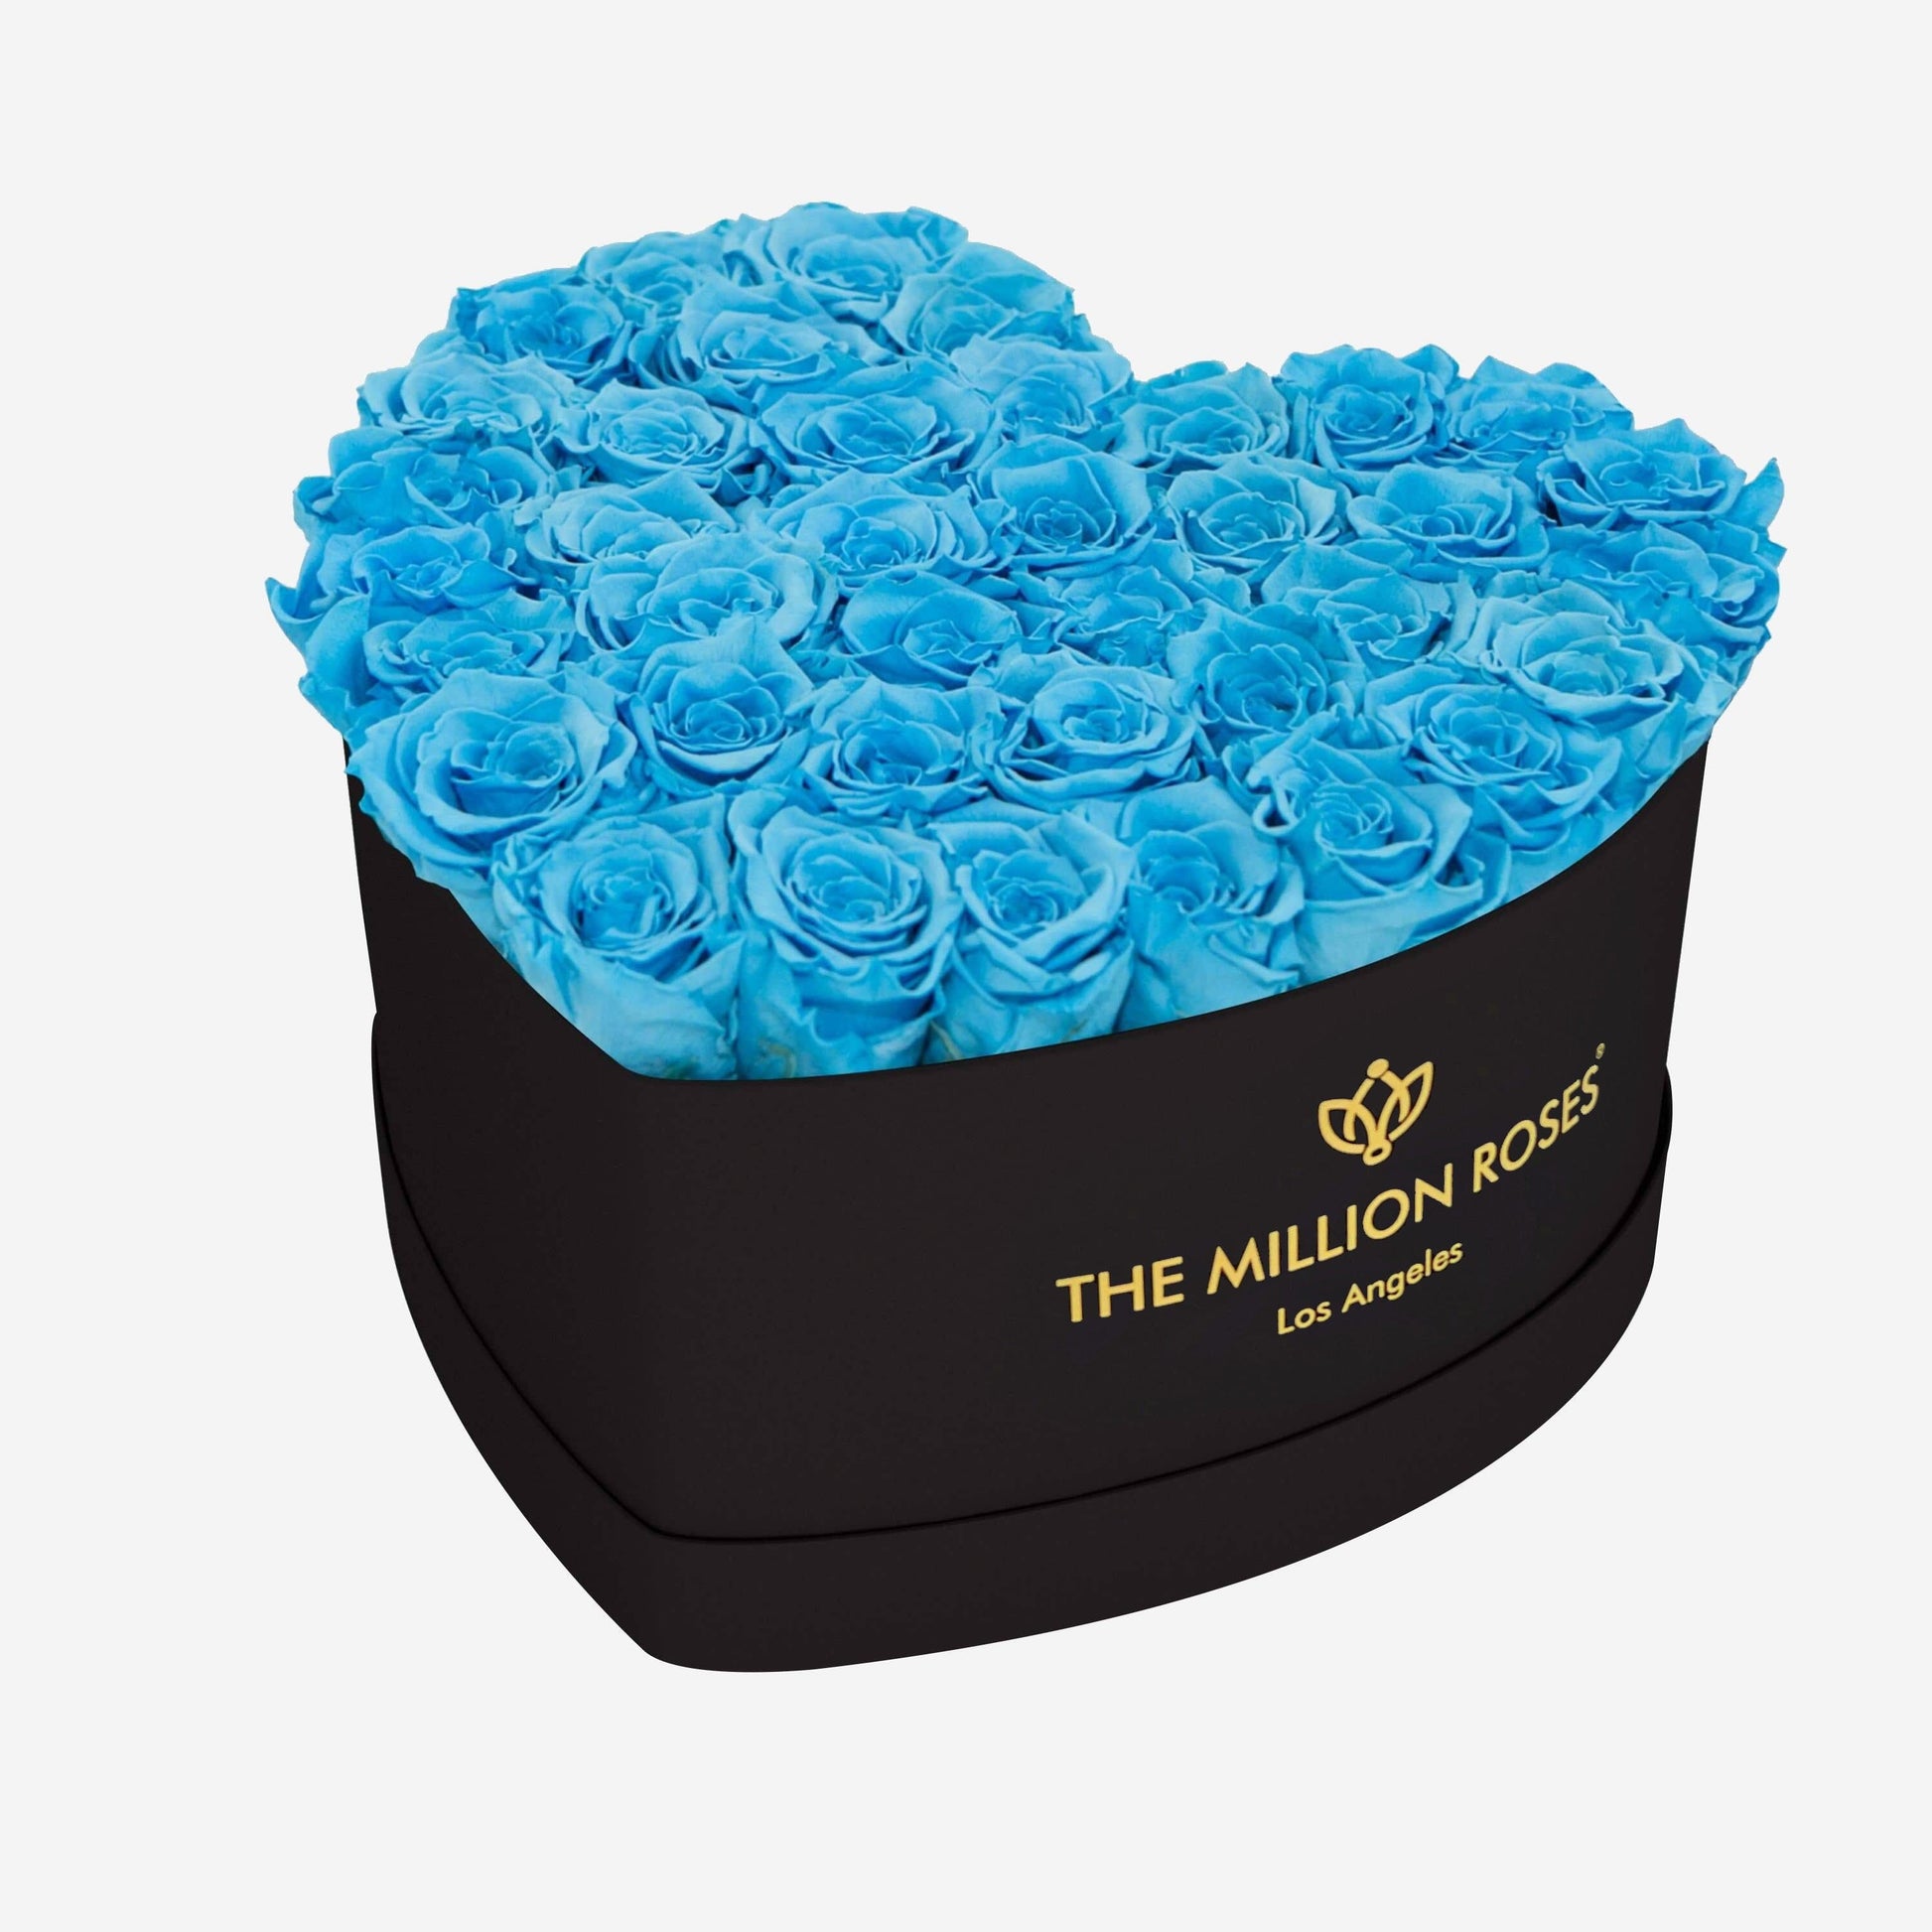 Heart Black Box | Light Blue Roses - The Million Roses